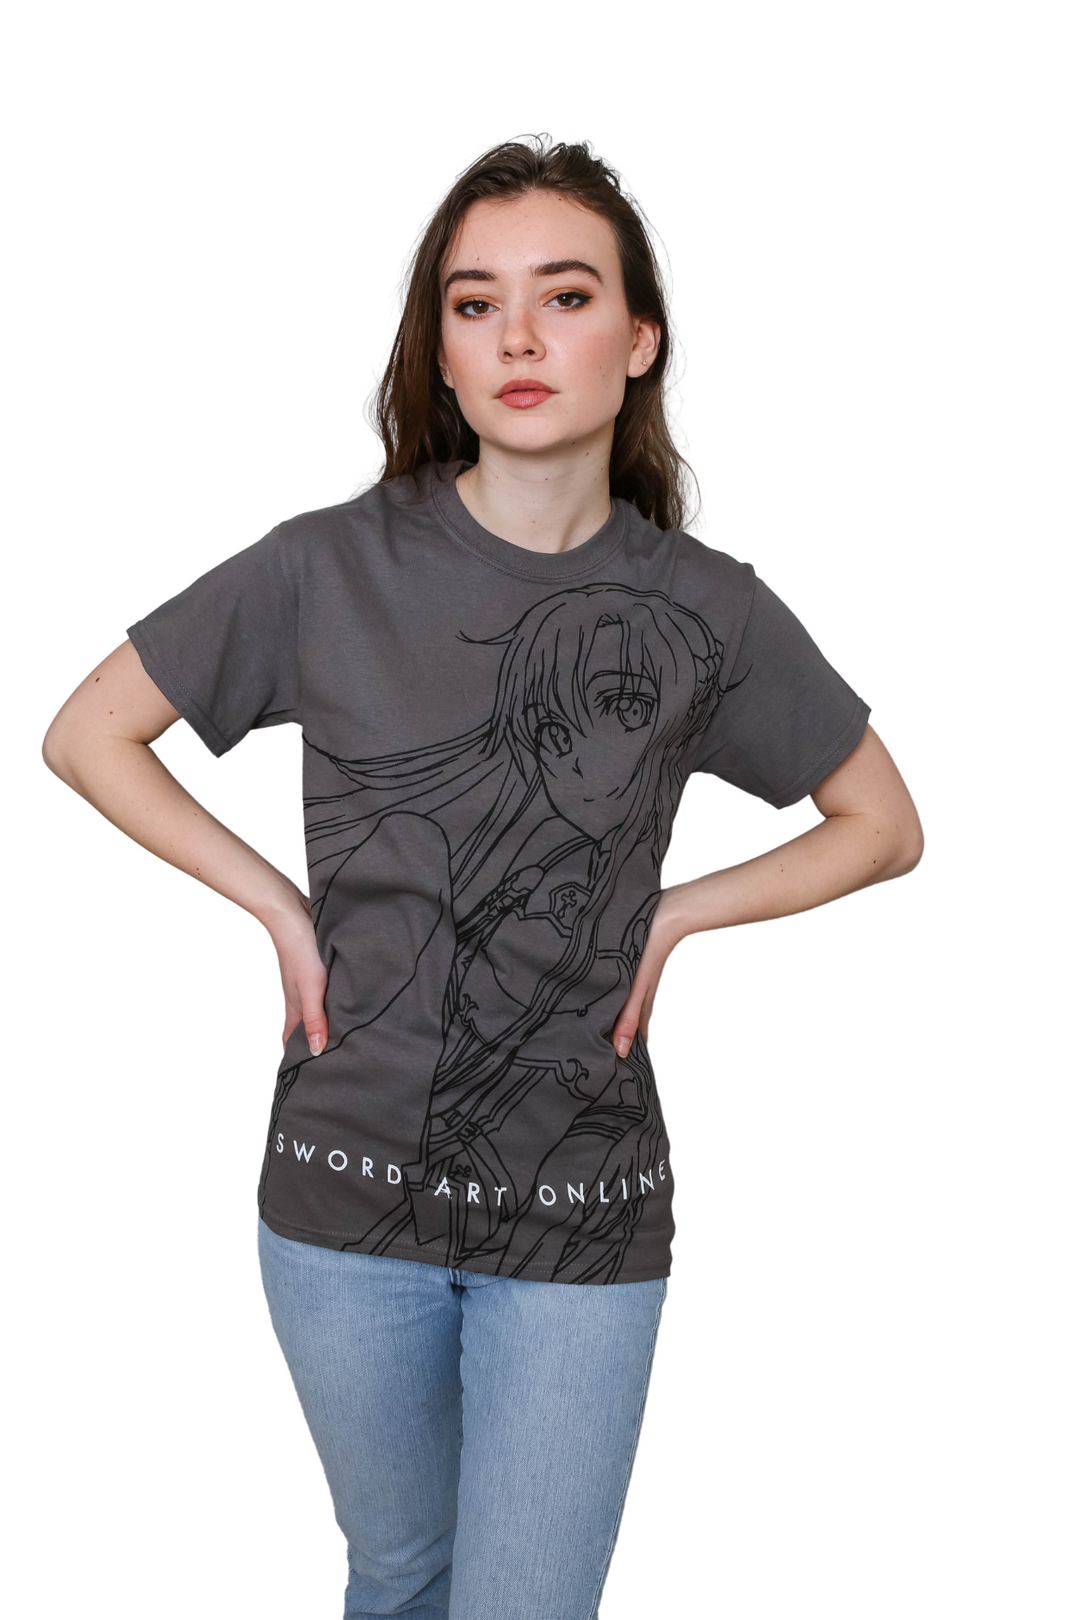 Sword Art Online - Asuna Sitting Line Art Adult T-Shirt